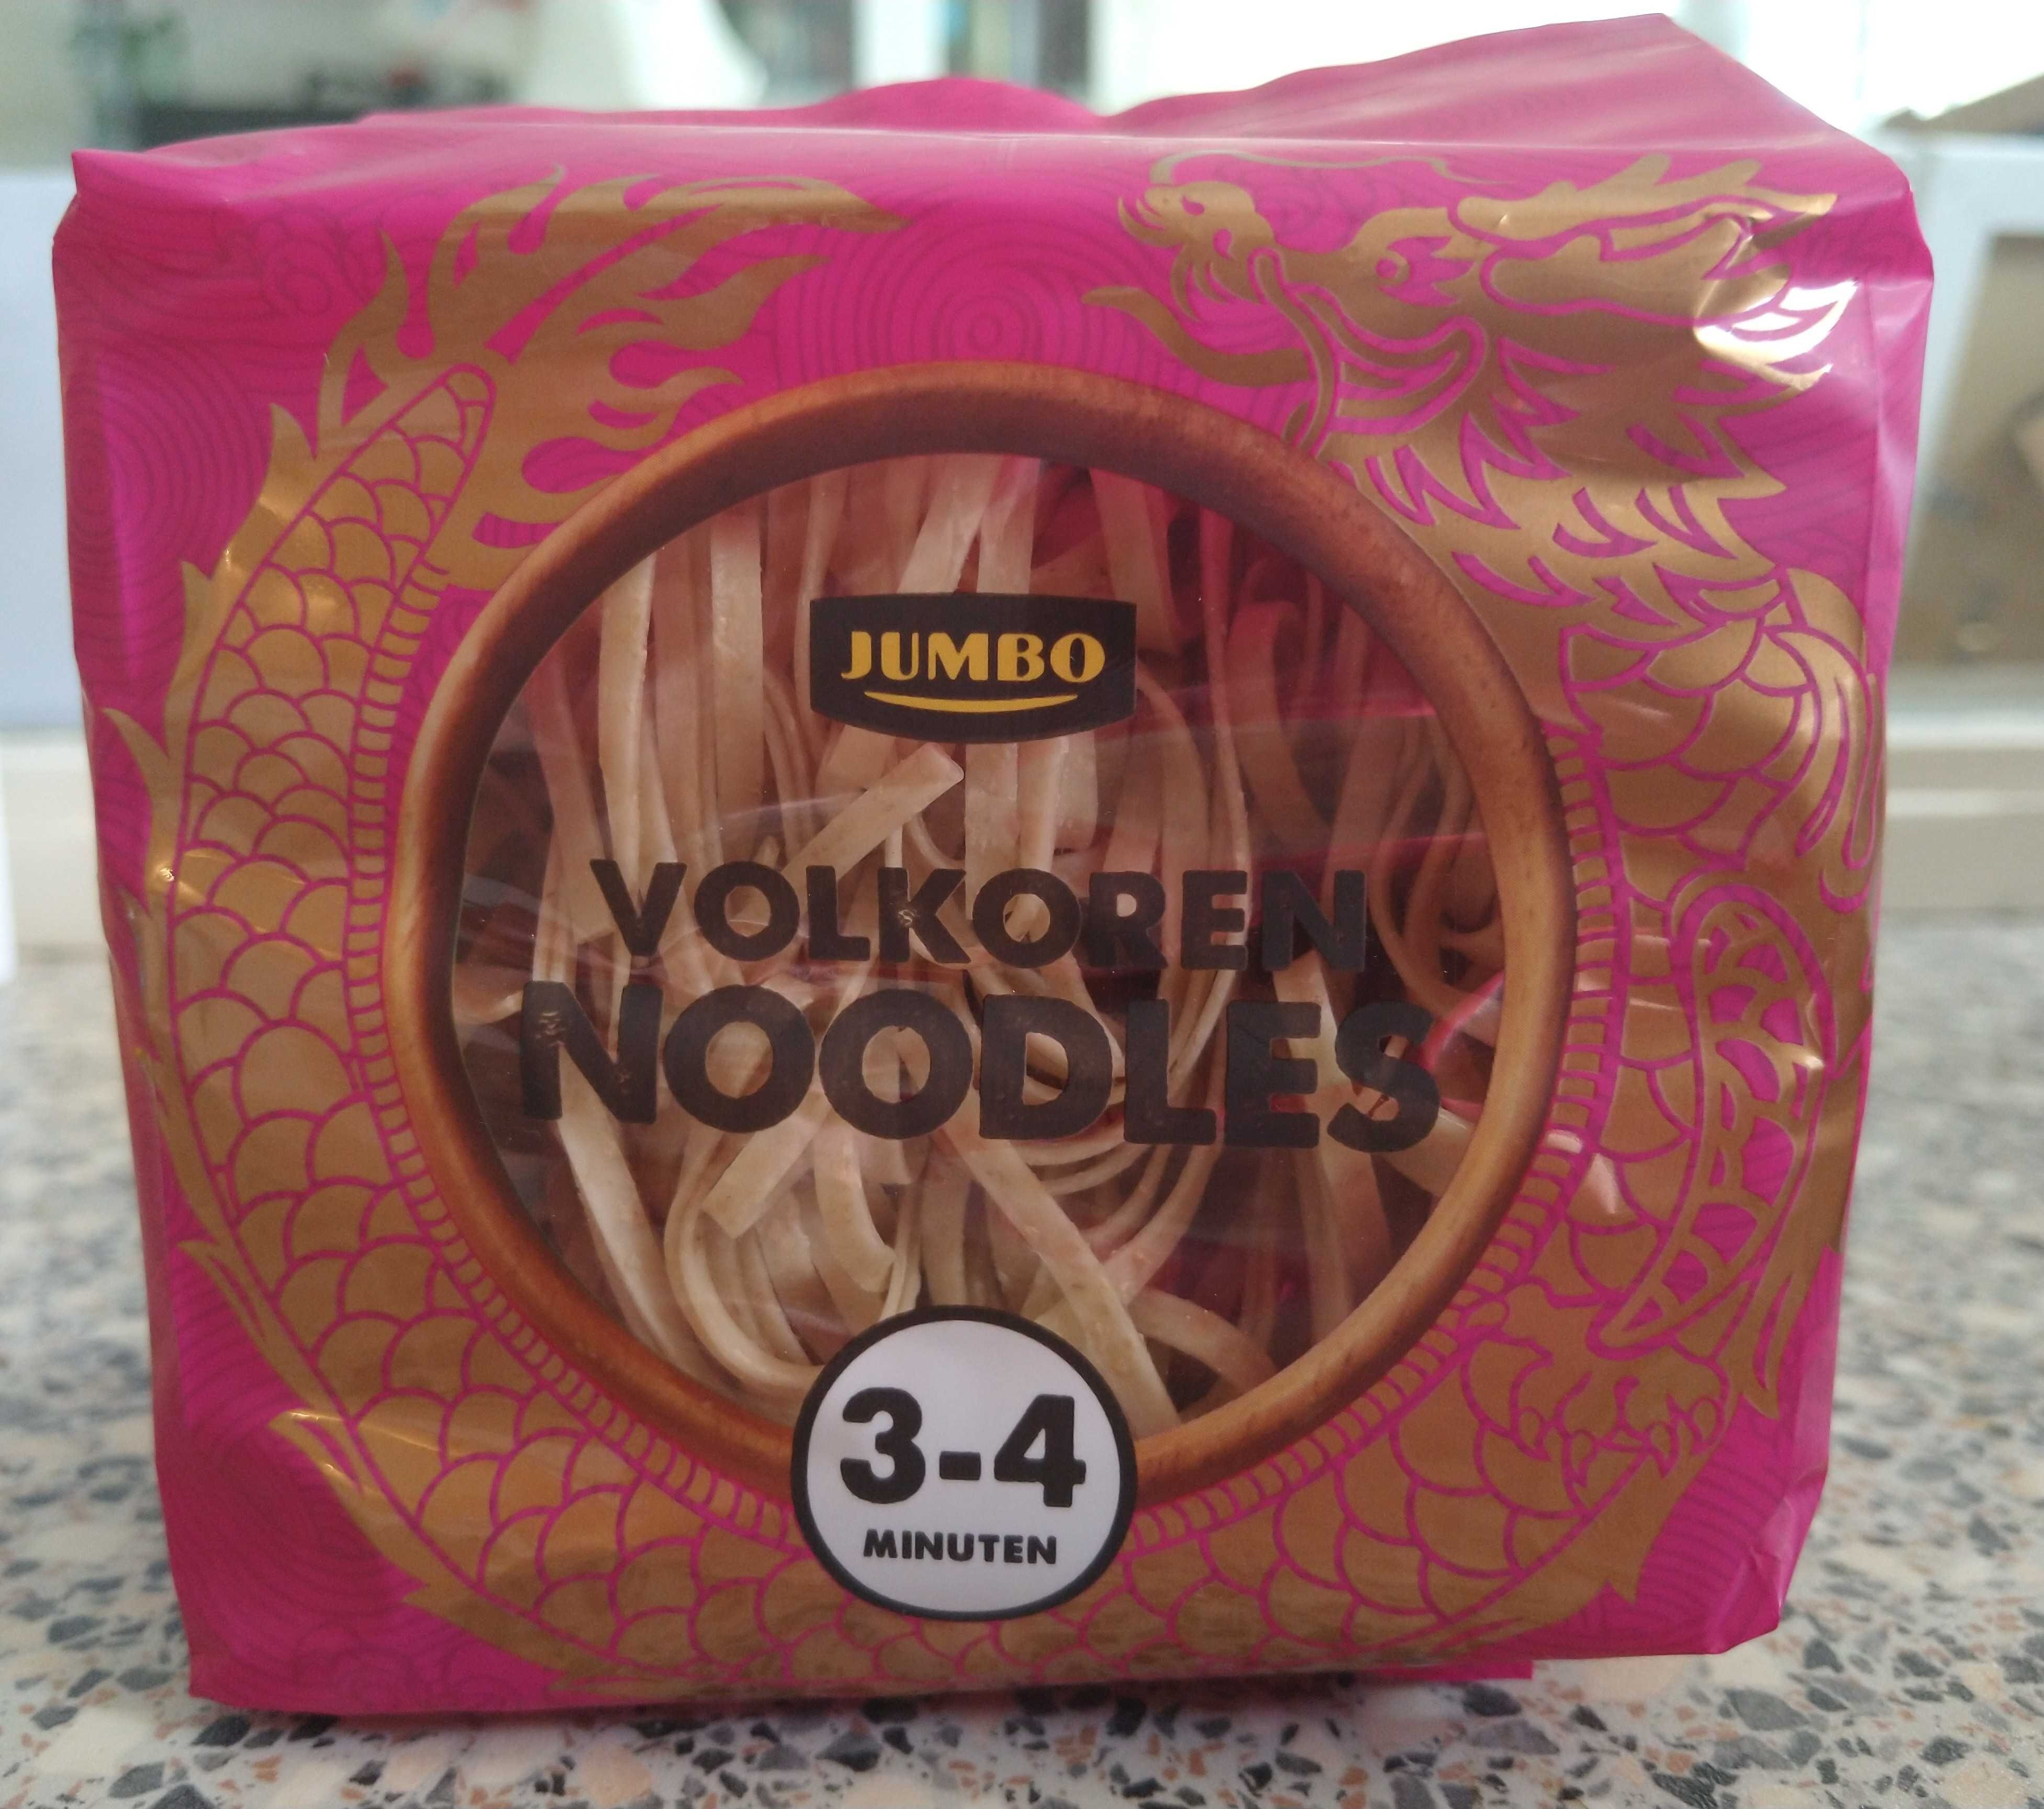 Volkoren noodles - Product - en